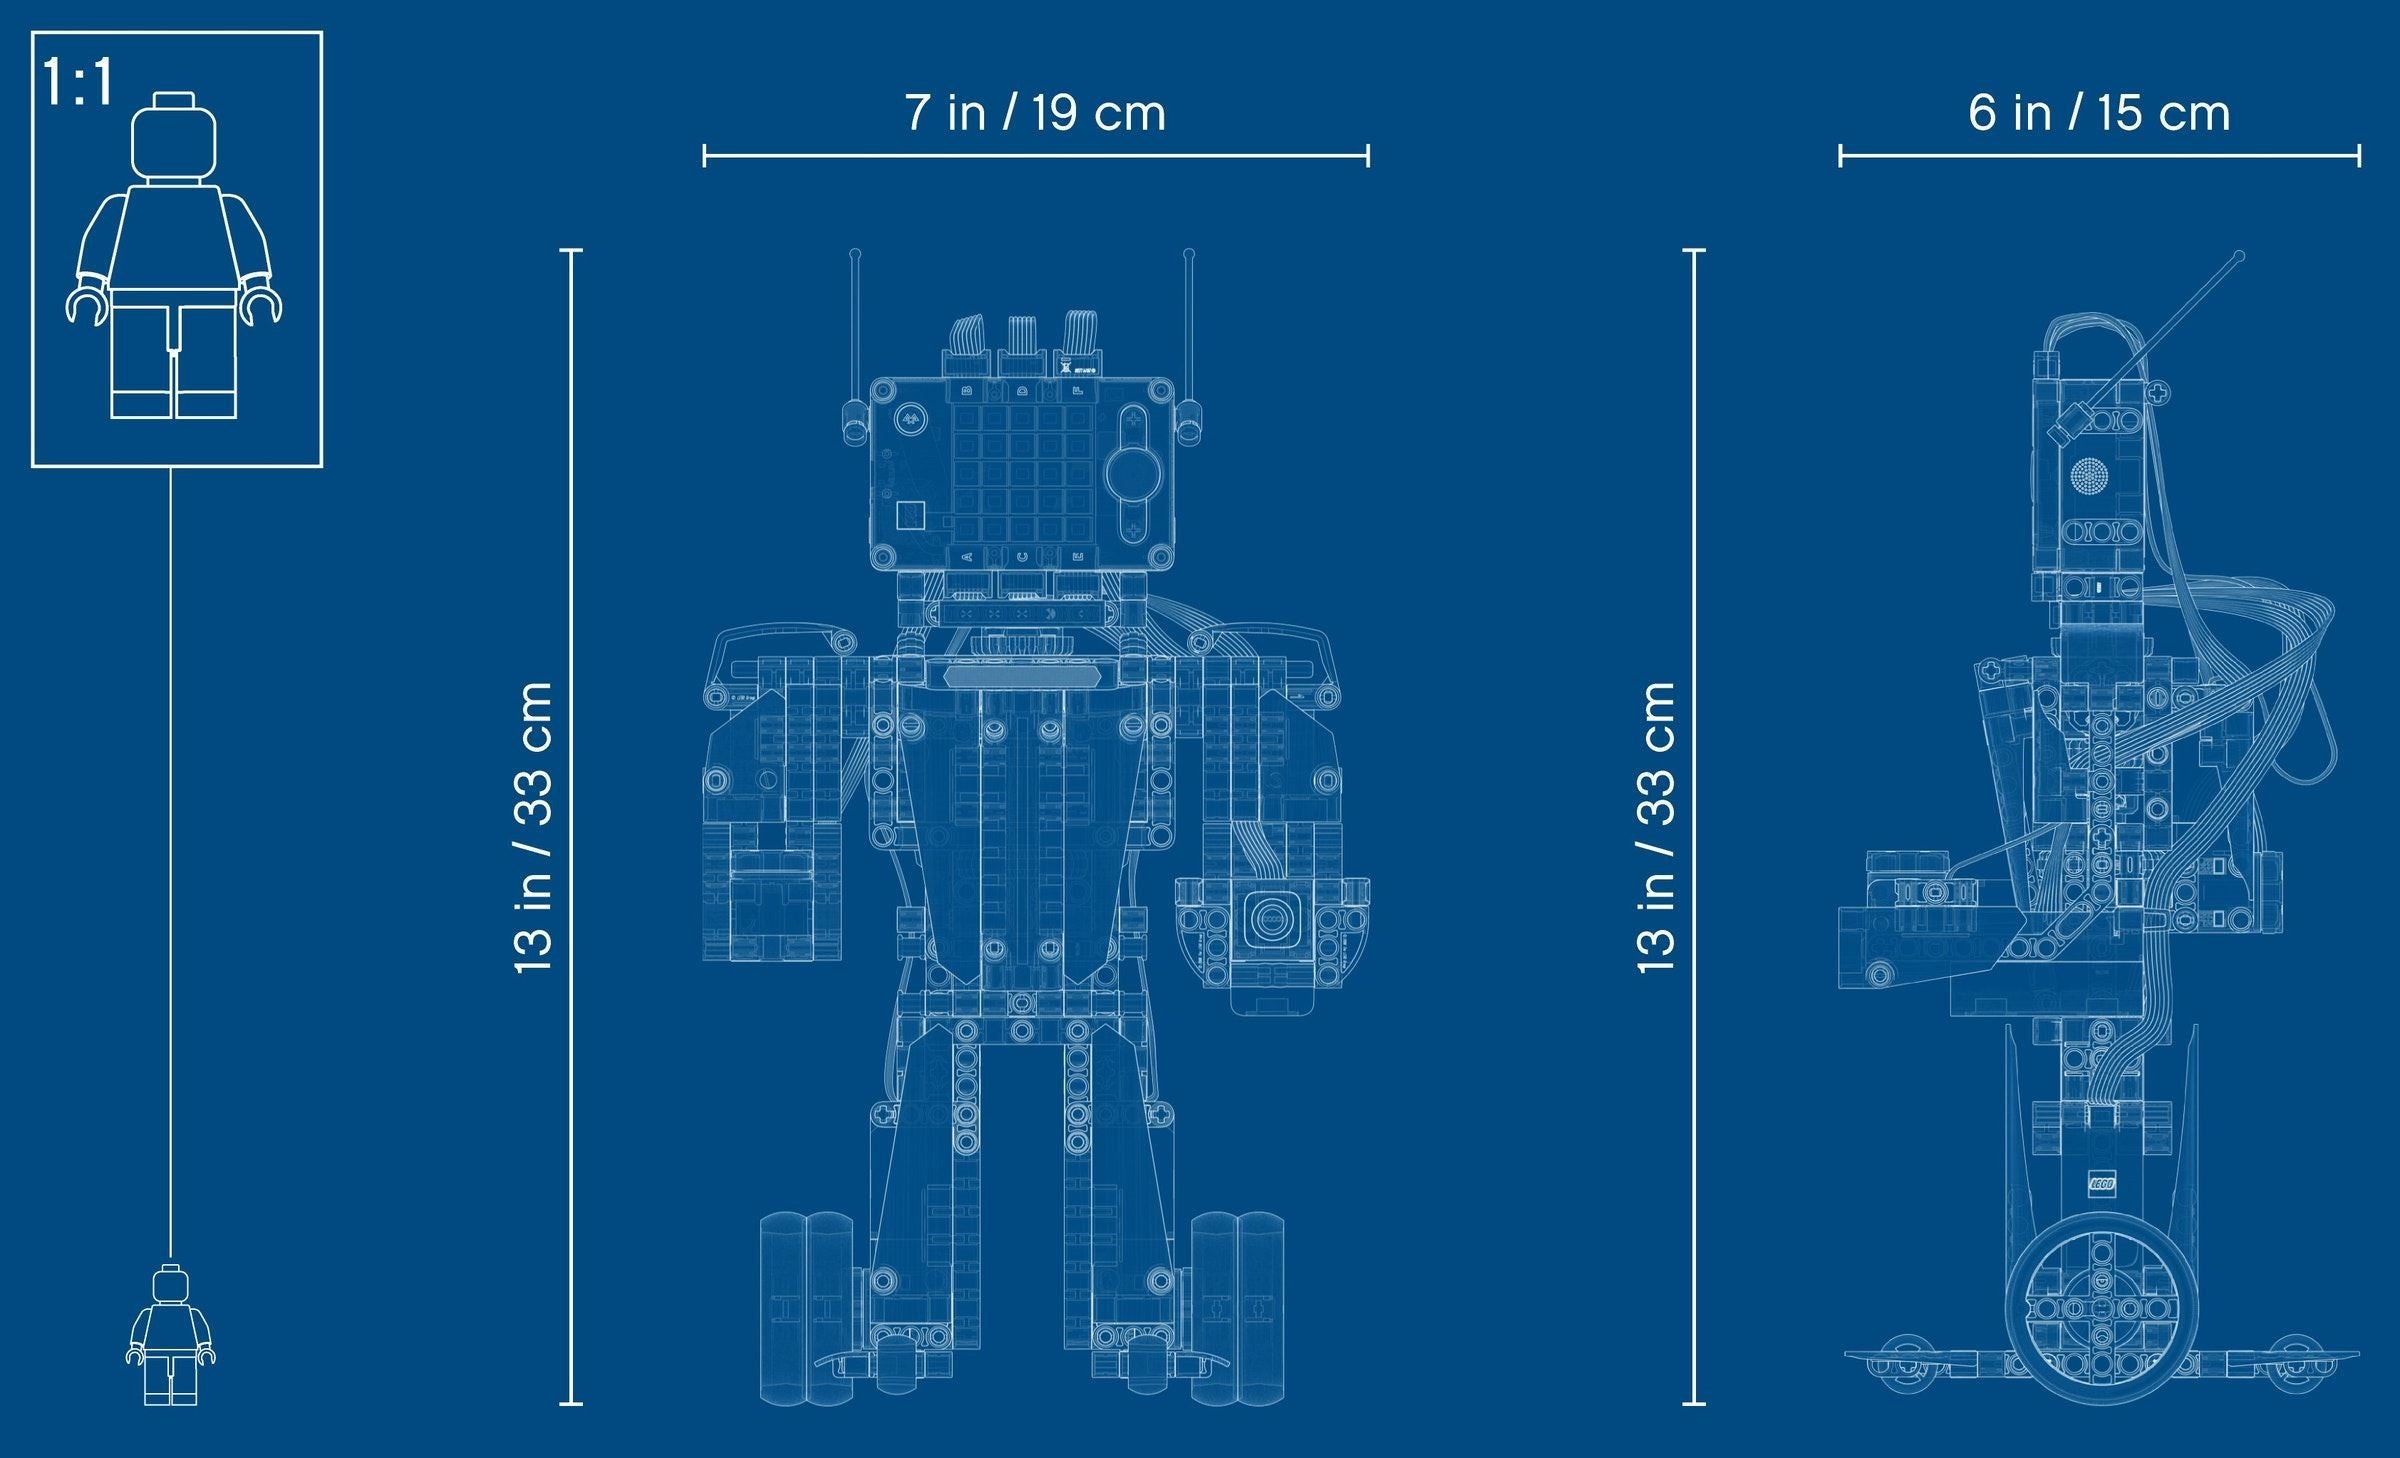 LEGO 51515 Robot Inventor